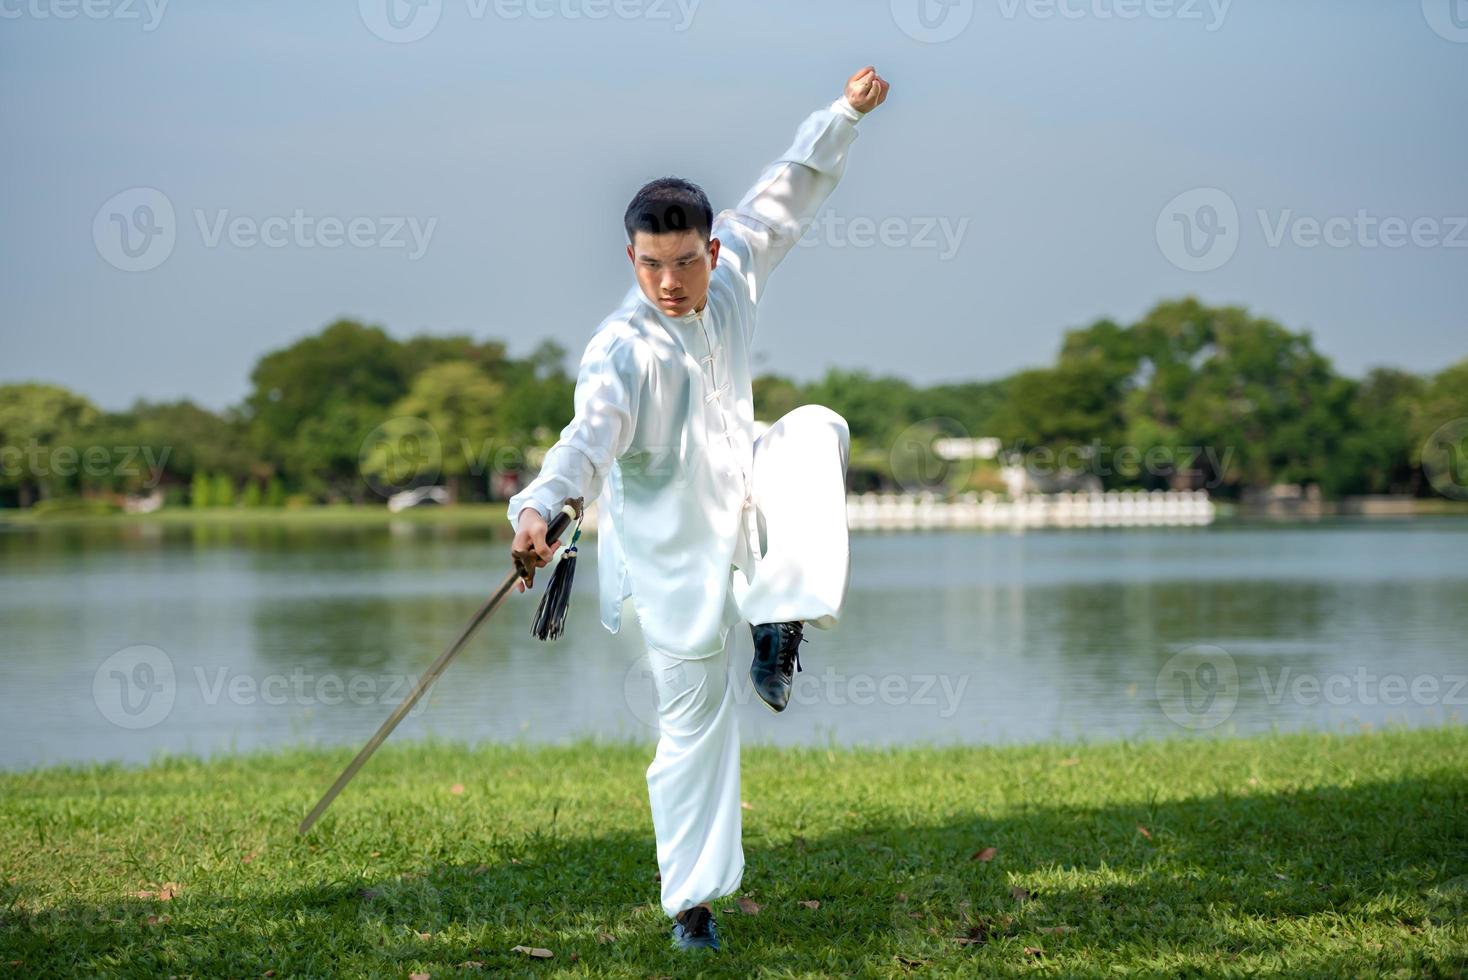 joven practicando la espada tradicional de tai chi, tai ji en el parque para el concepto saludable y tradicional de artes marciales chinas sobre fondo natural. foto